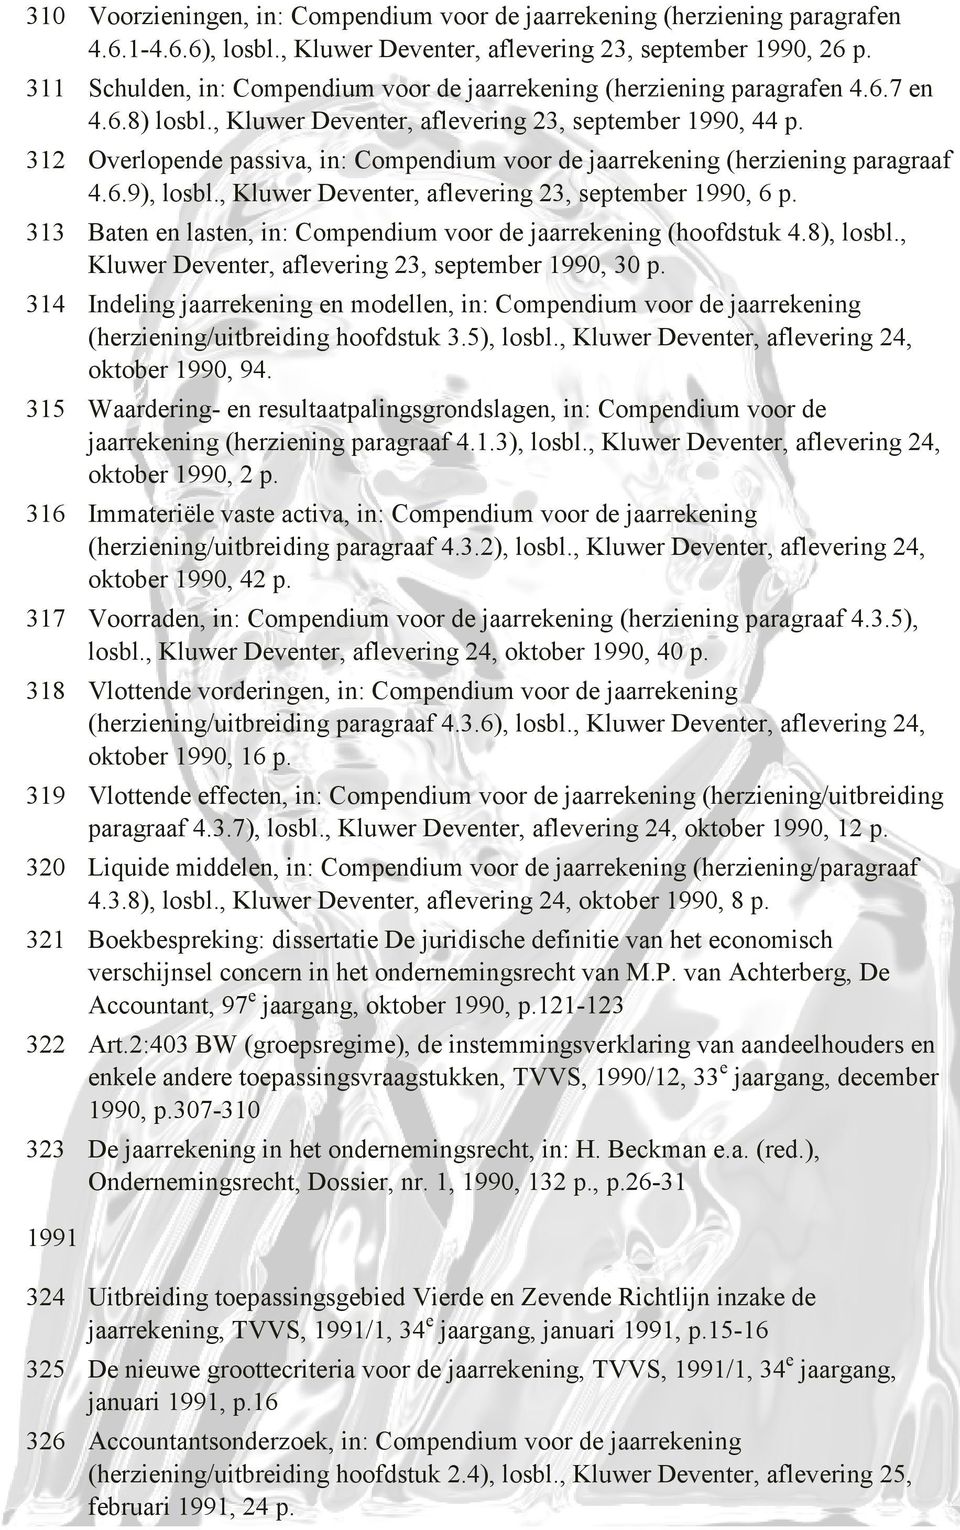 312 Overlopende passiva, in: Compendium voor de jaarrekening (herziening paragraaf 4.6.9), losbl., Kluwer Deventer, aflevering 23, september 1990, 6 p.